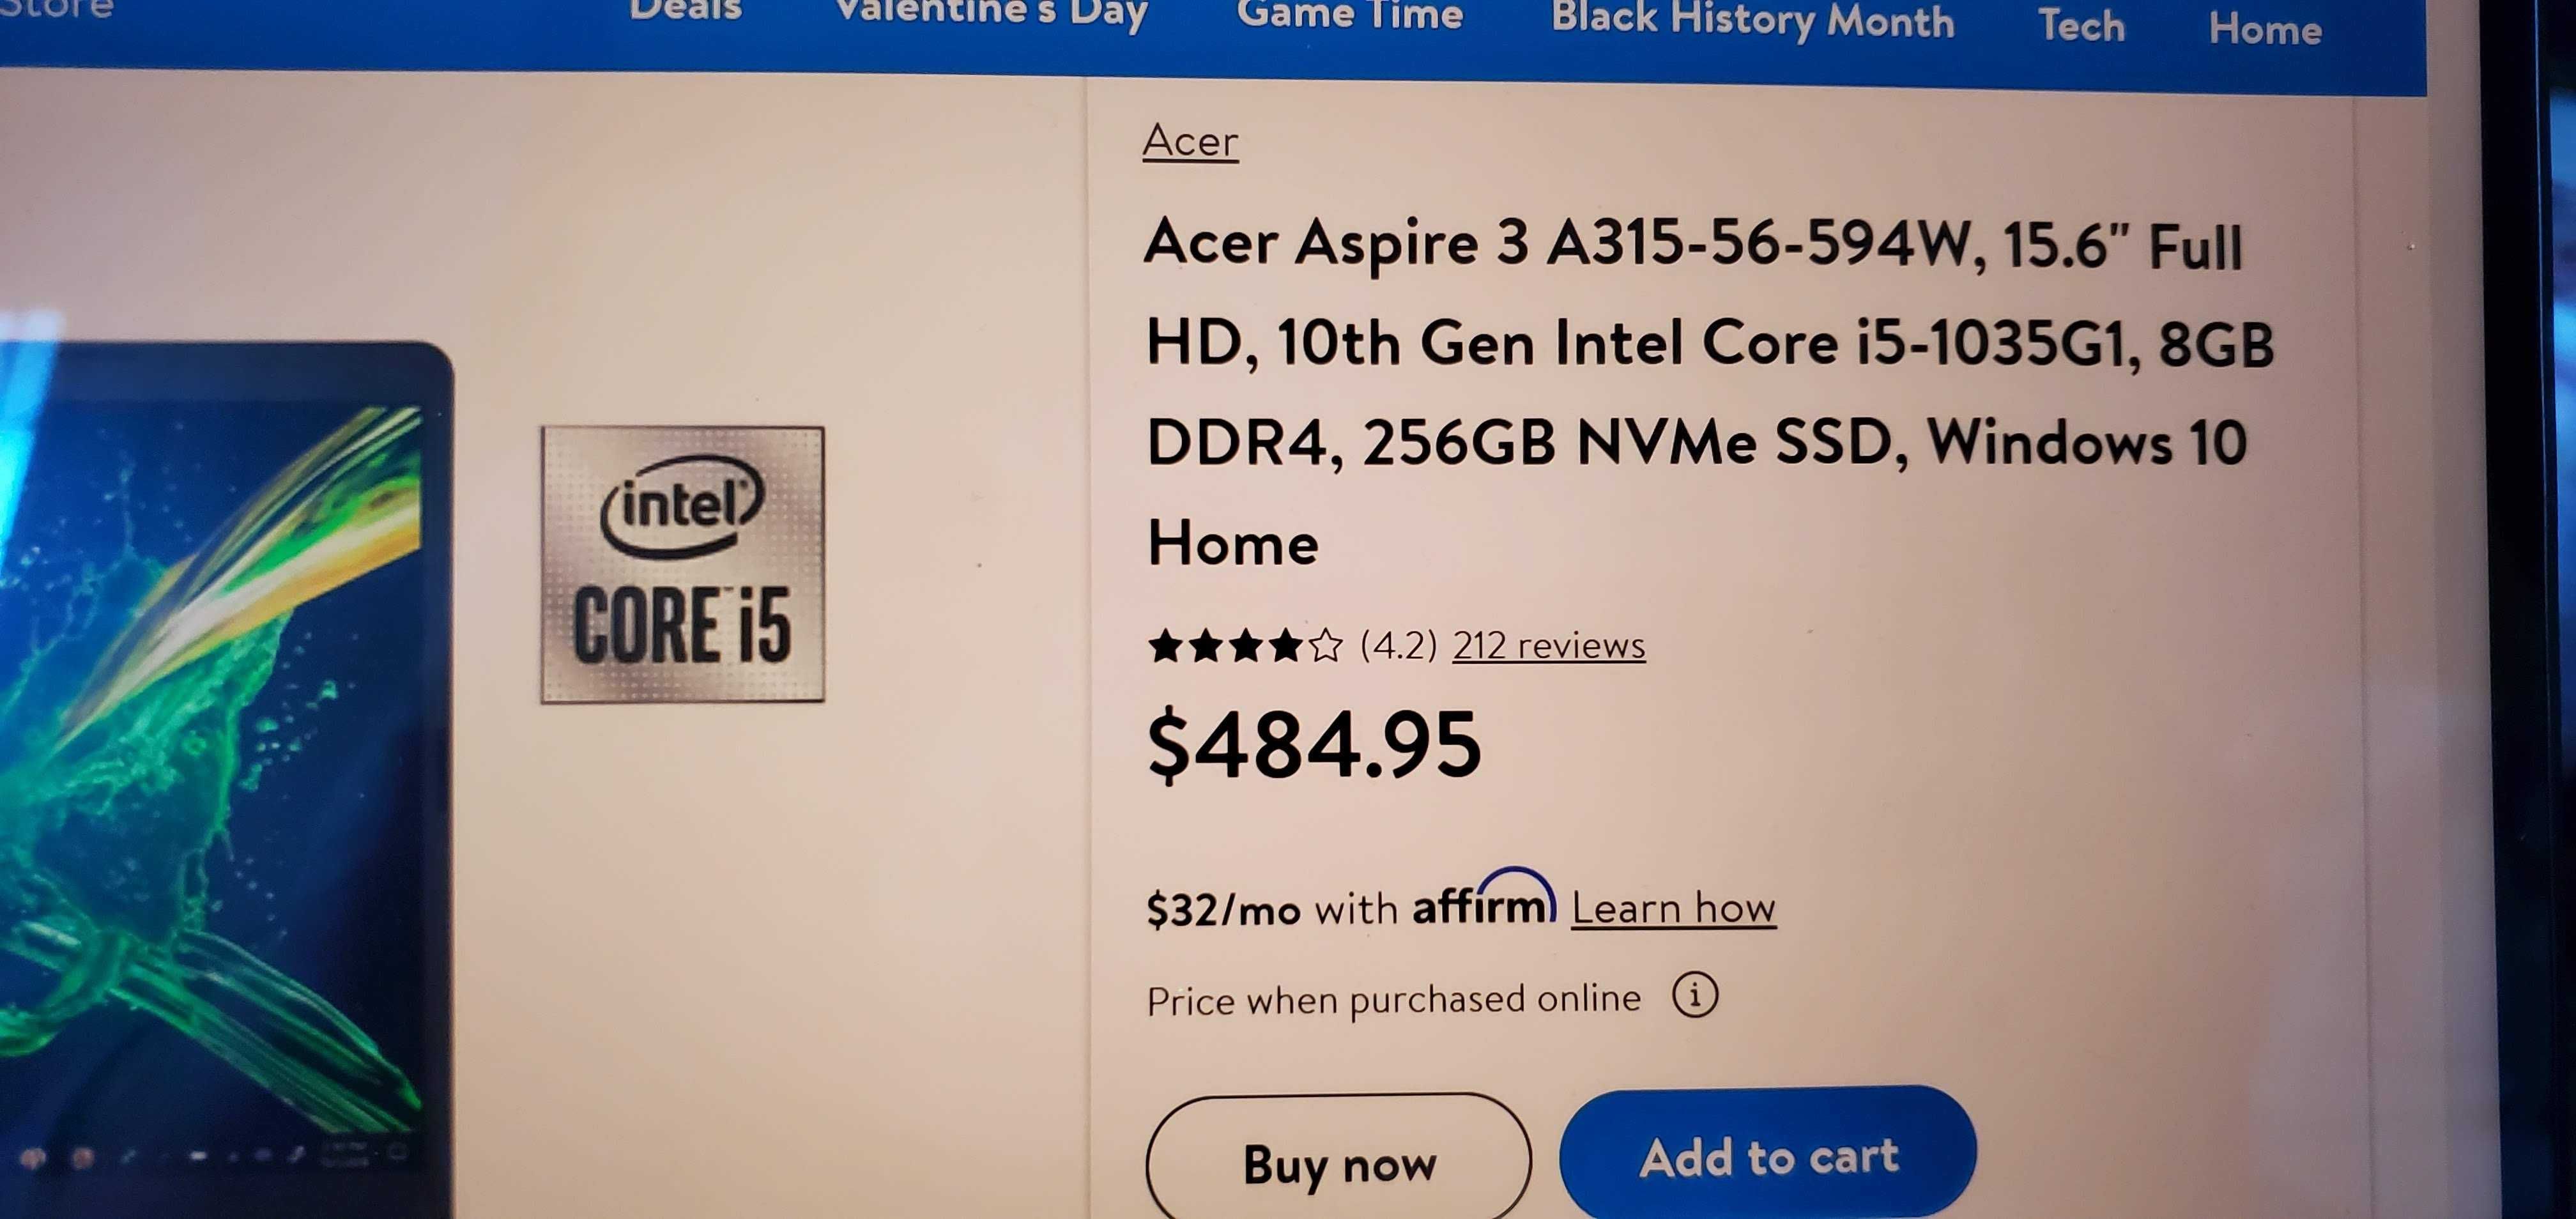 Acer Aspire 3 A315-56-594W, 15.6 Full HD, 10th Gen Intel Core i5-1035G1,  8GB DDR4, 256GB NVMe SSD, Windows 10 Home 